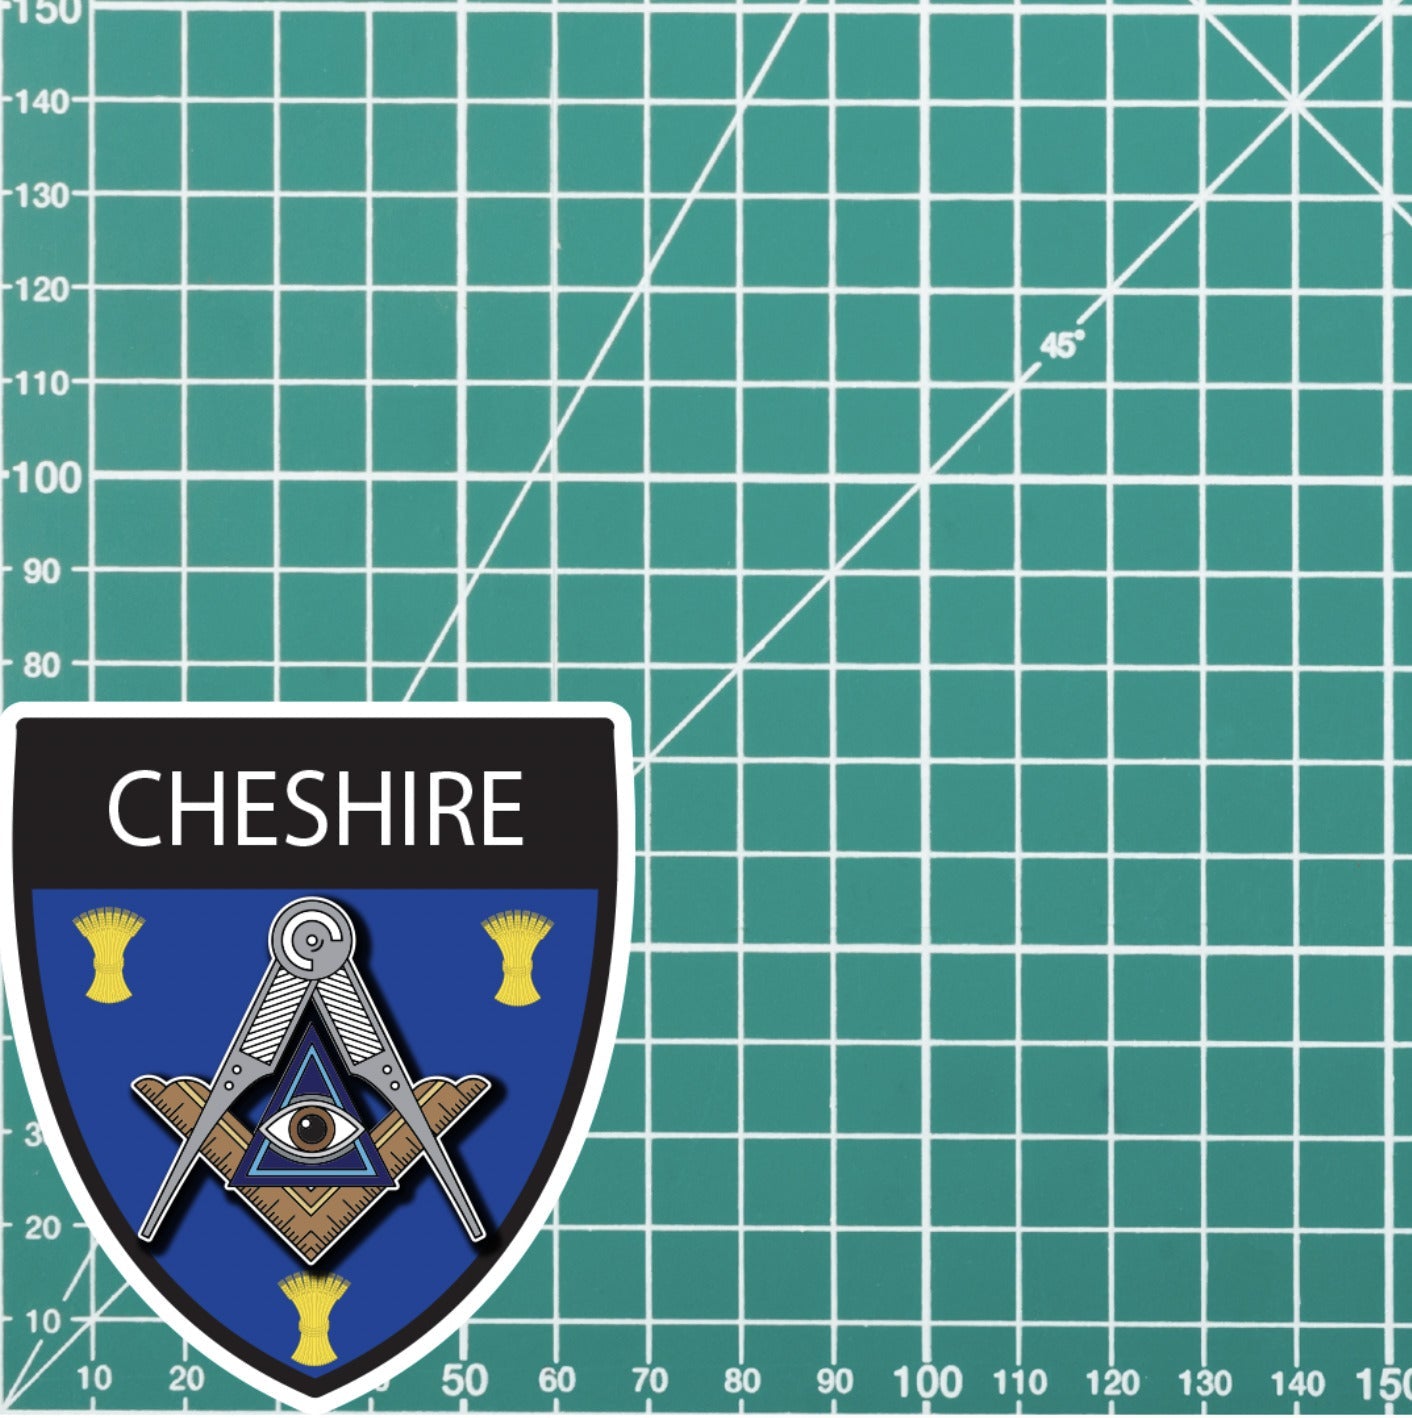 Cheshire Masonic Shield Sticker redplume